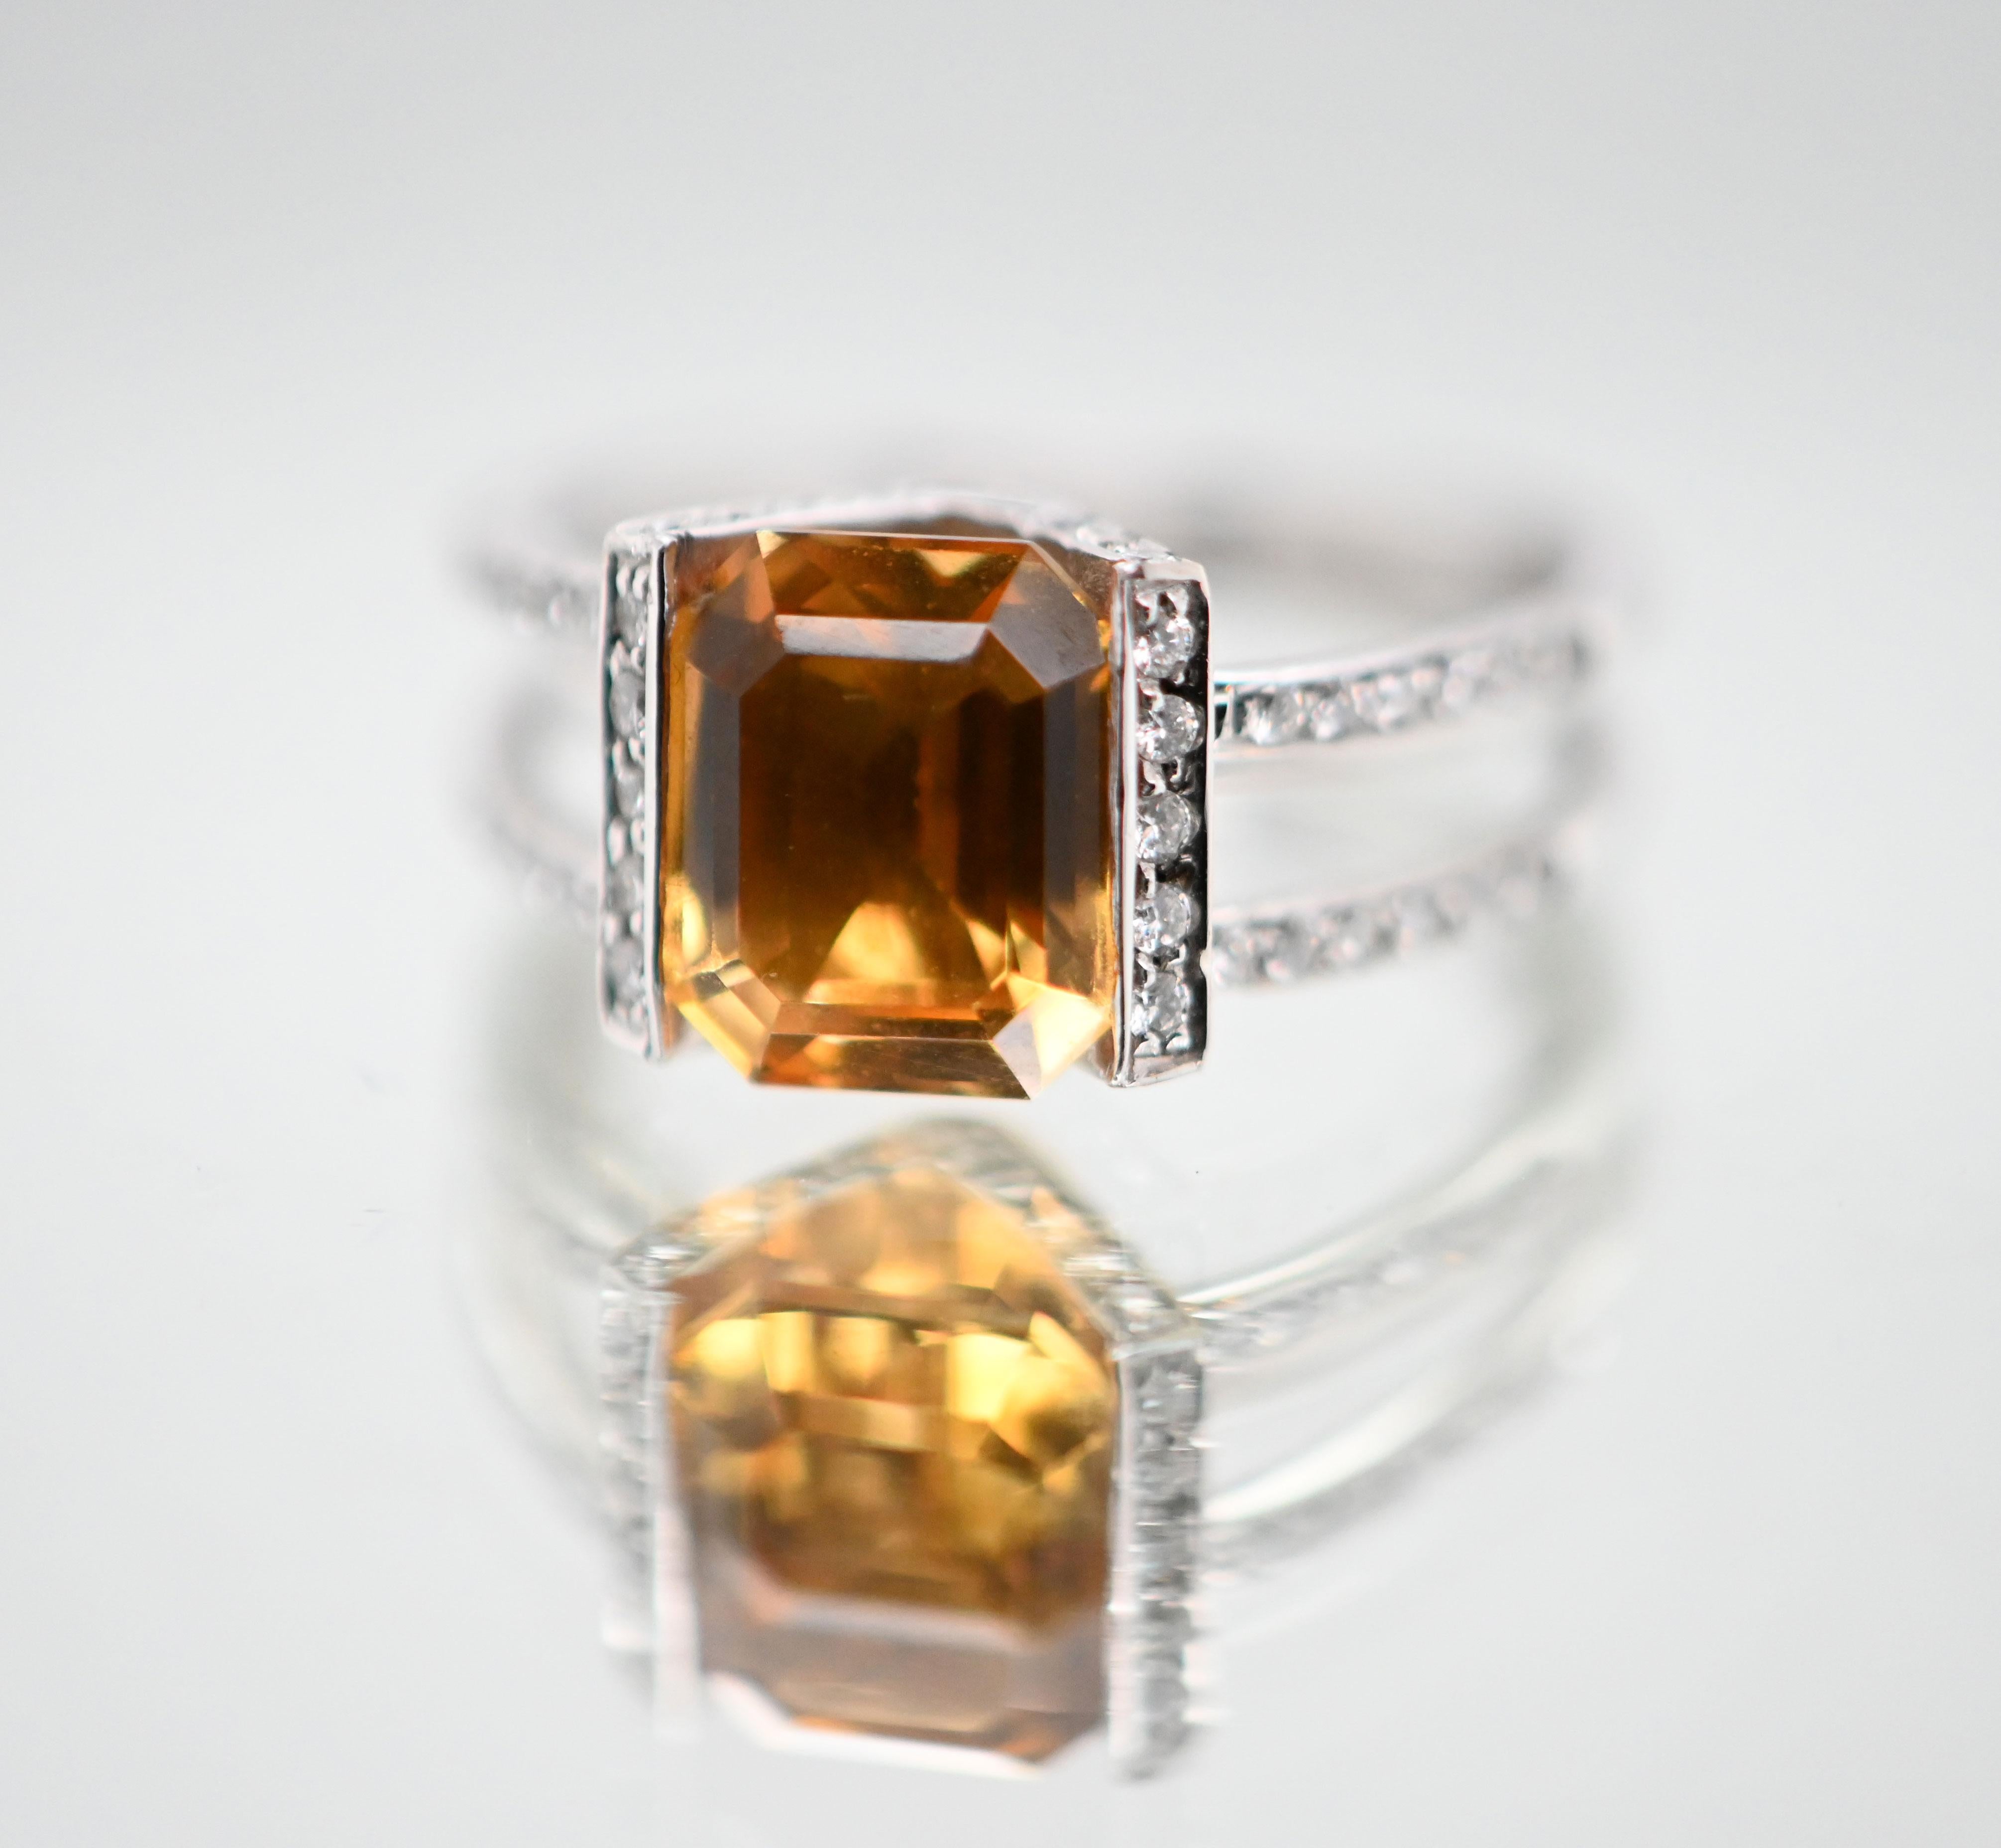 Entdecken Sie diesen prächtigen Ring aus 18 Karat Weißgold mit einem smaragdförmigen Citrin, der von funkelnden Diamanten umgeben ist. Mit seinem zarten Design und seiner sorgfältigen Verarbeitung verkörpert dieser Ring Eleganz und Raffinesse.

In